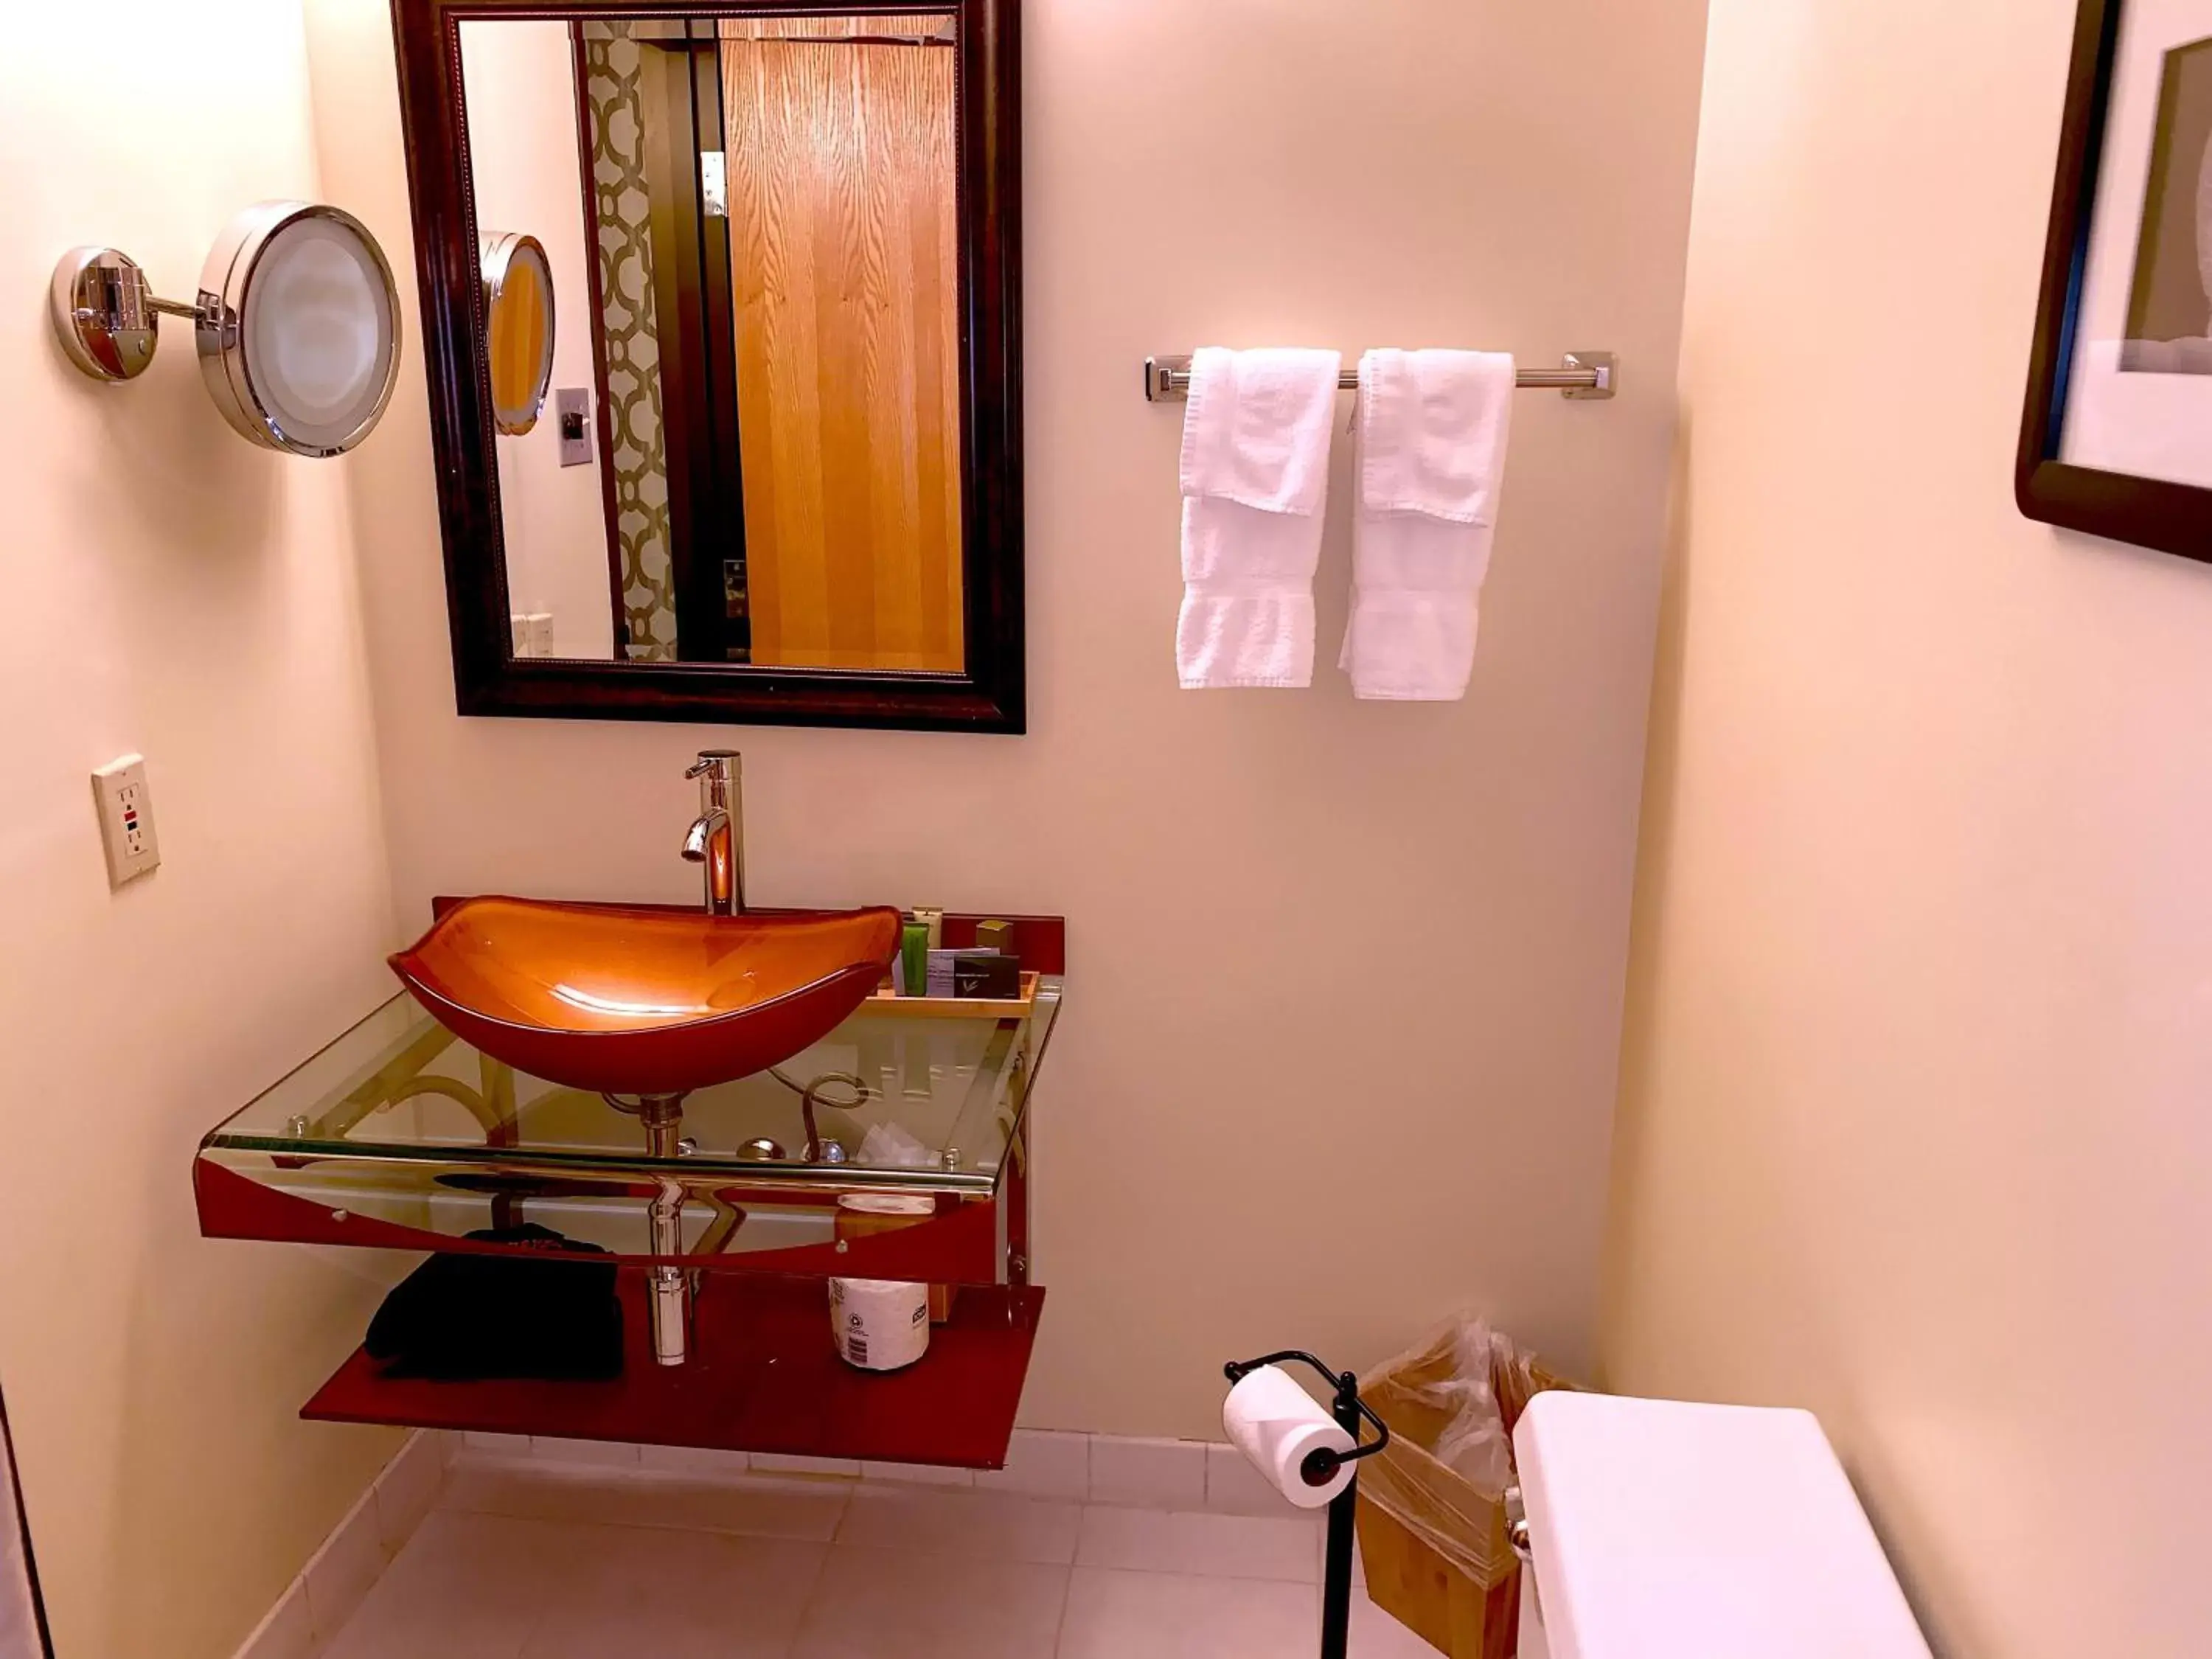 Bathroom in The Academy Hotel Colorado Springs